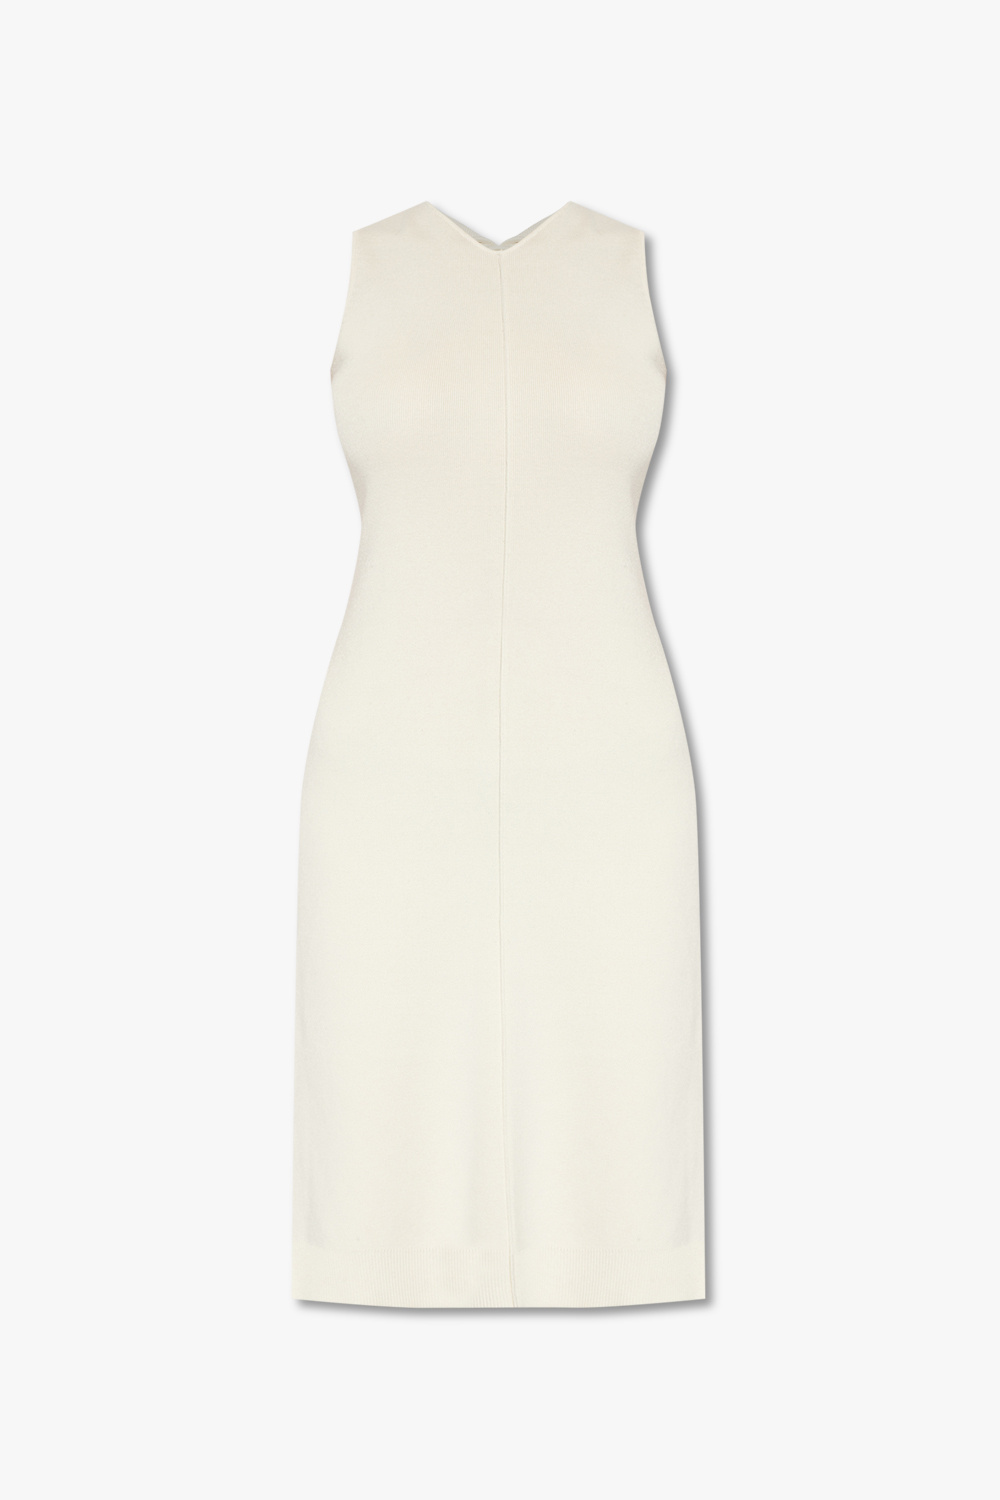 Proenza Schouler PS1 Sleeveless dress